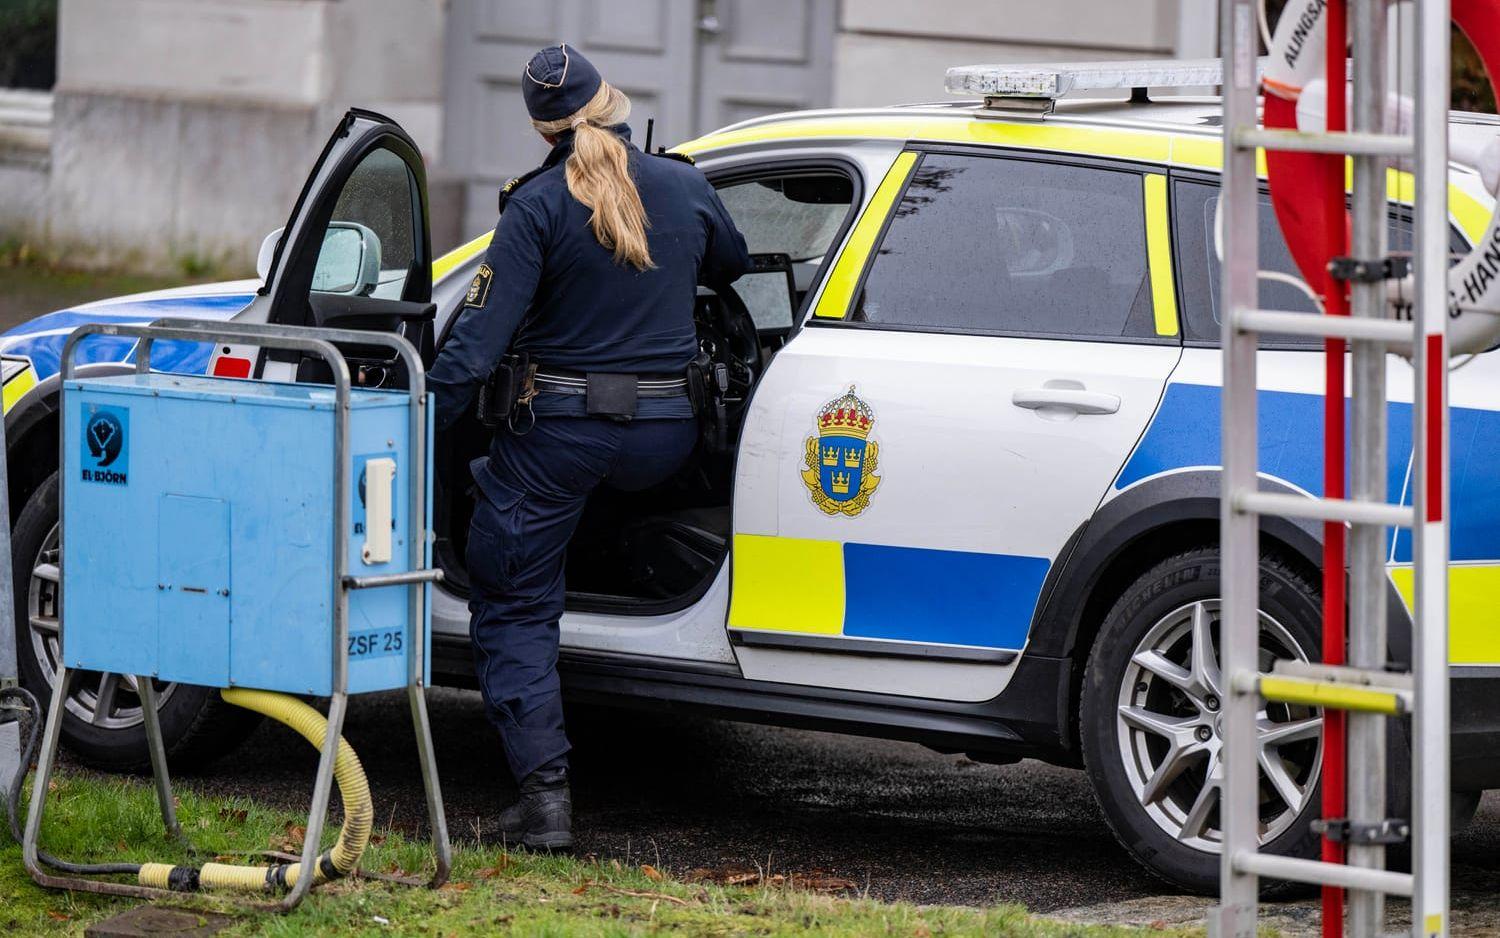 En man hittades död i Lillån under torsdagsmorgonen. Flera ambulanser och polispatruller skickades till platsen i centrala Alingsås.